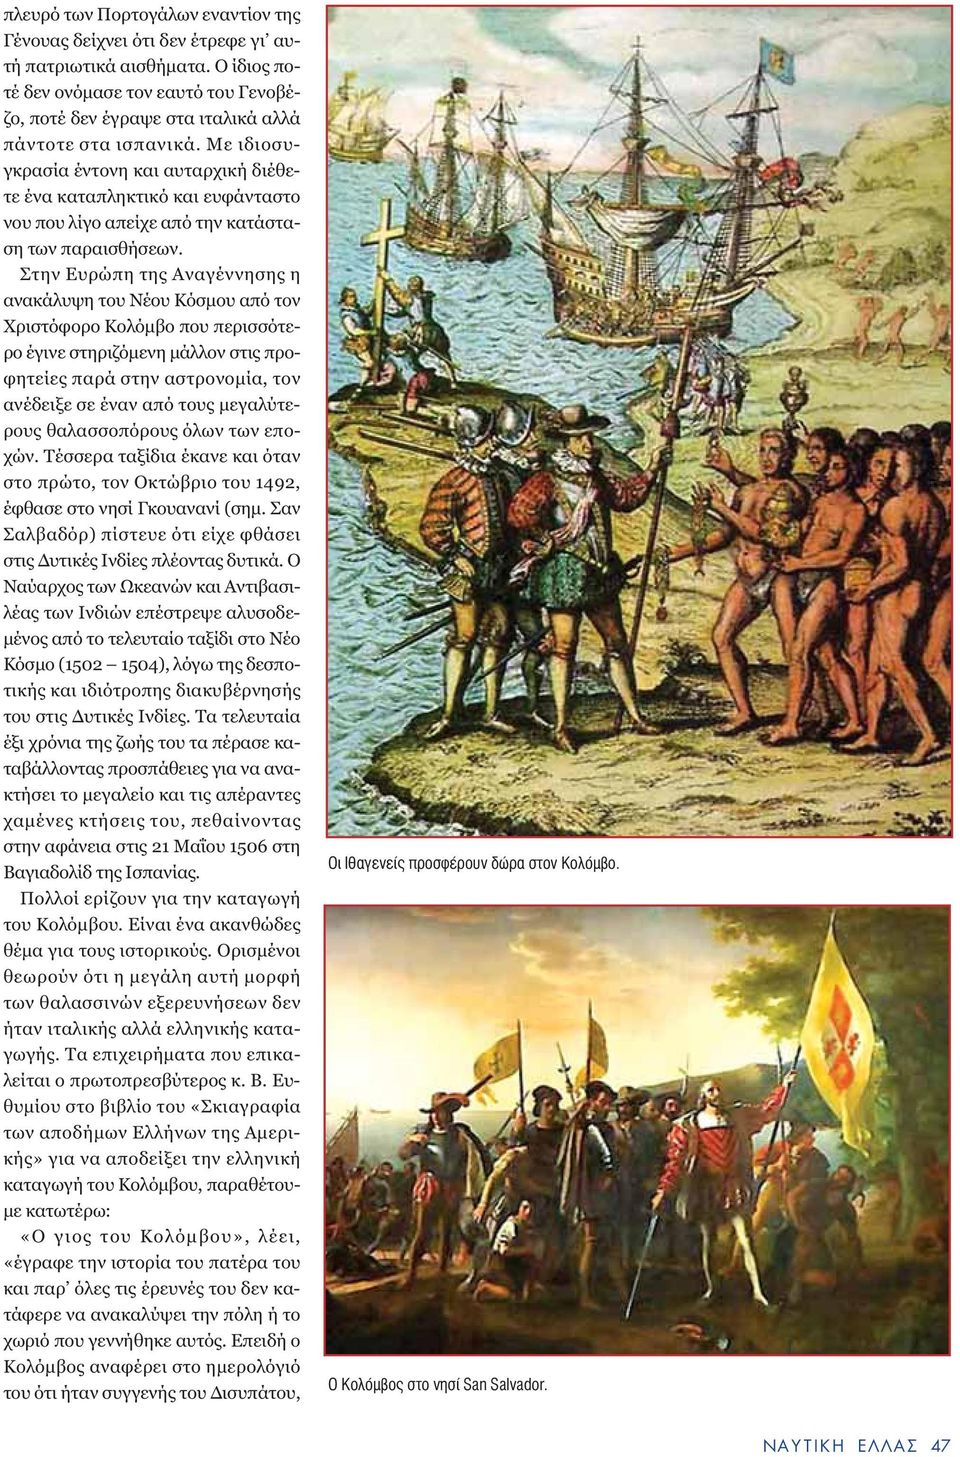 Στην Ευρώπη της Αναγέννησης η ανακάλυψη του Νέου Κόσµου από τον Χριστόφορο Κολόµβο που περισσότερο έγινε στηριζόµενη µάλλον στις προφητείες παρά στην αστρονοµία, τον ανέδειξε σε έναν από τους